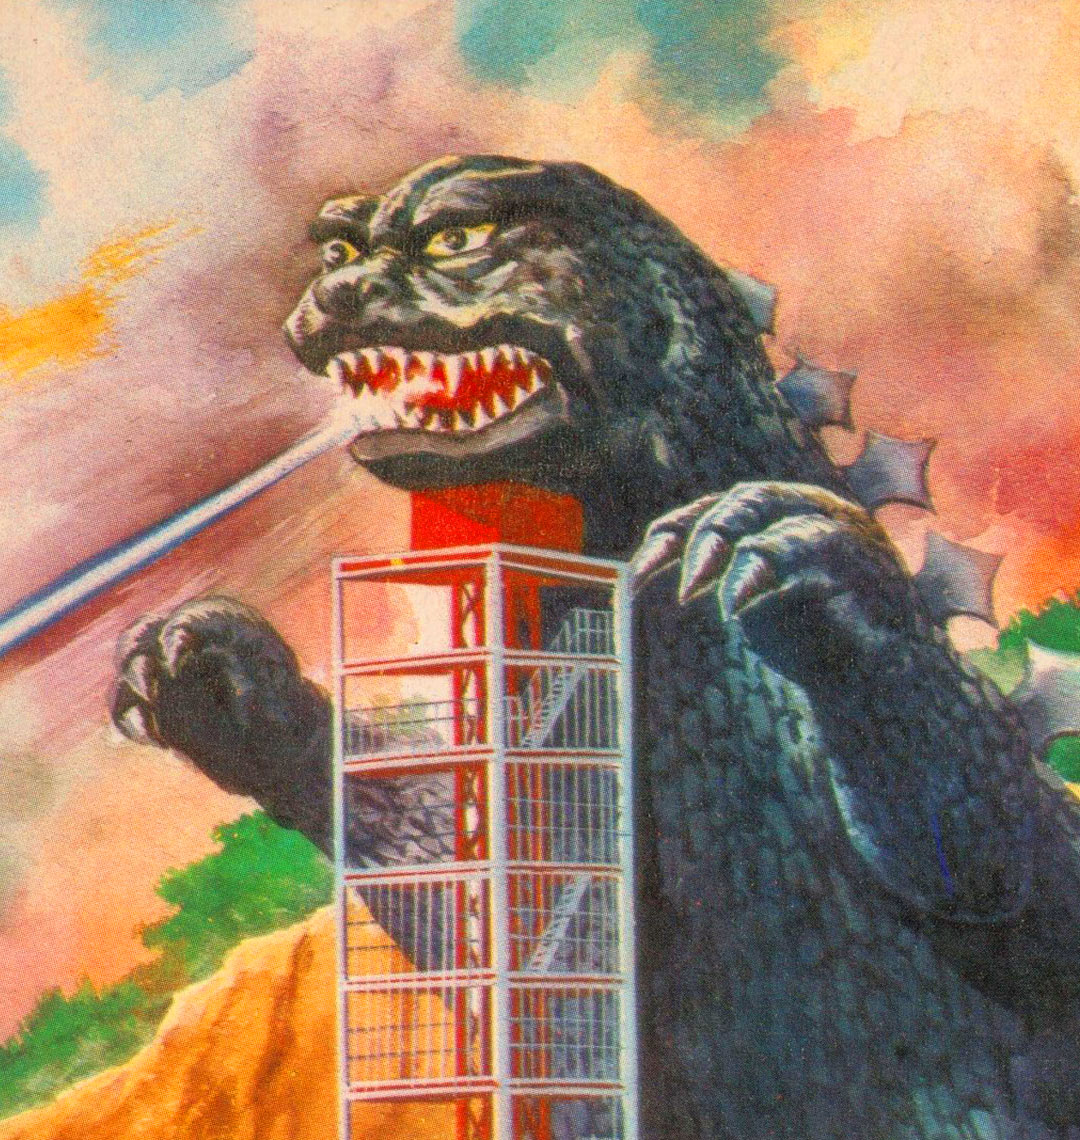 Godzilla Tower